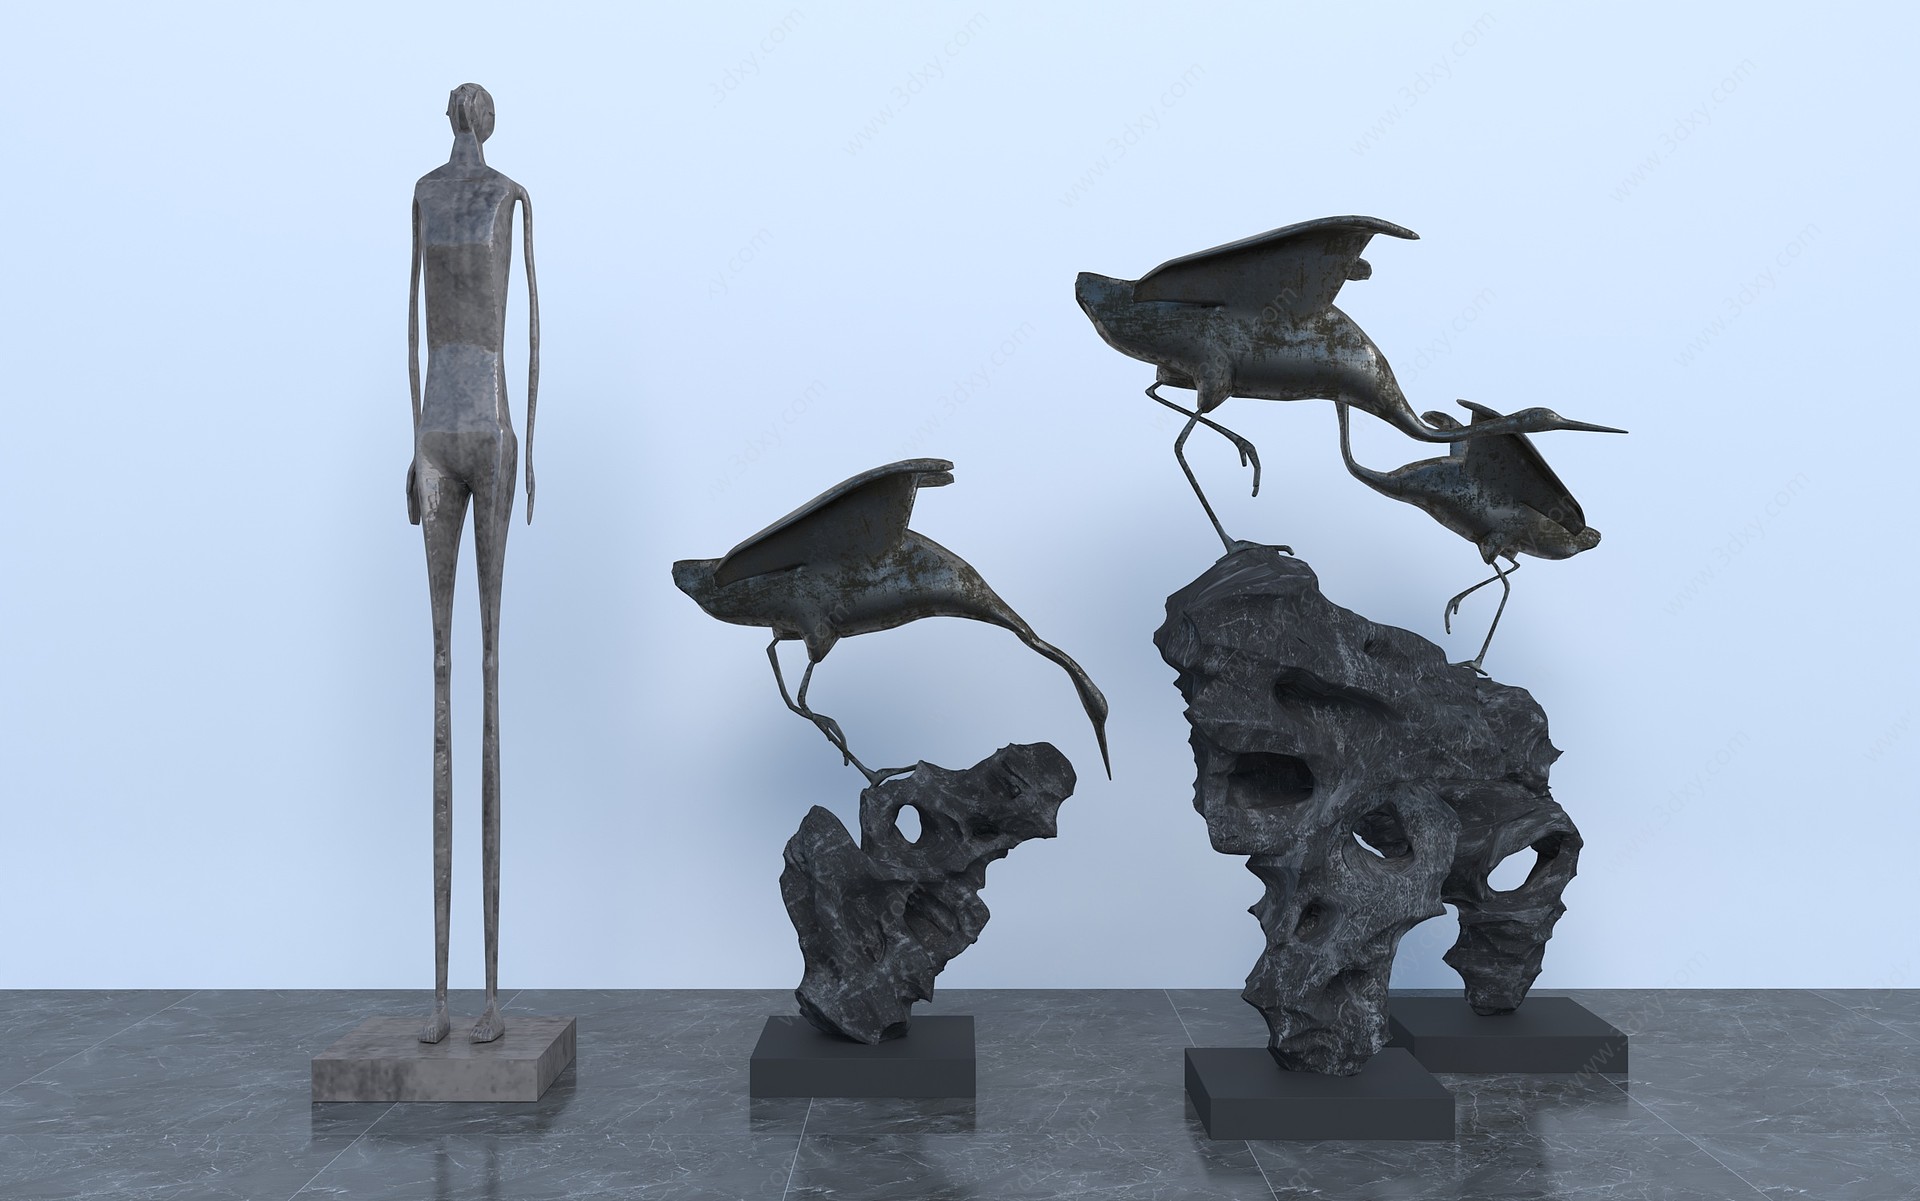 现代雕塑装置3D模型